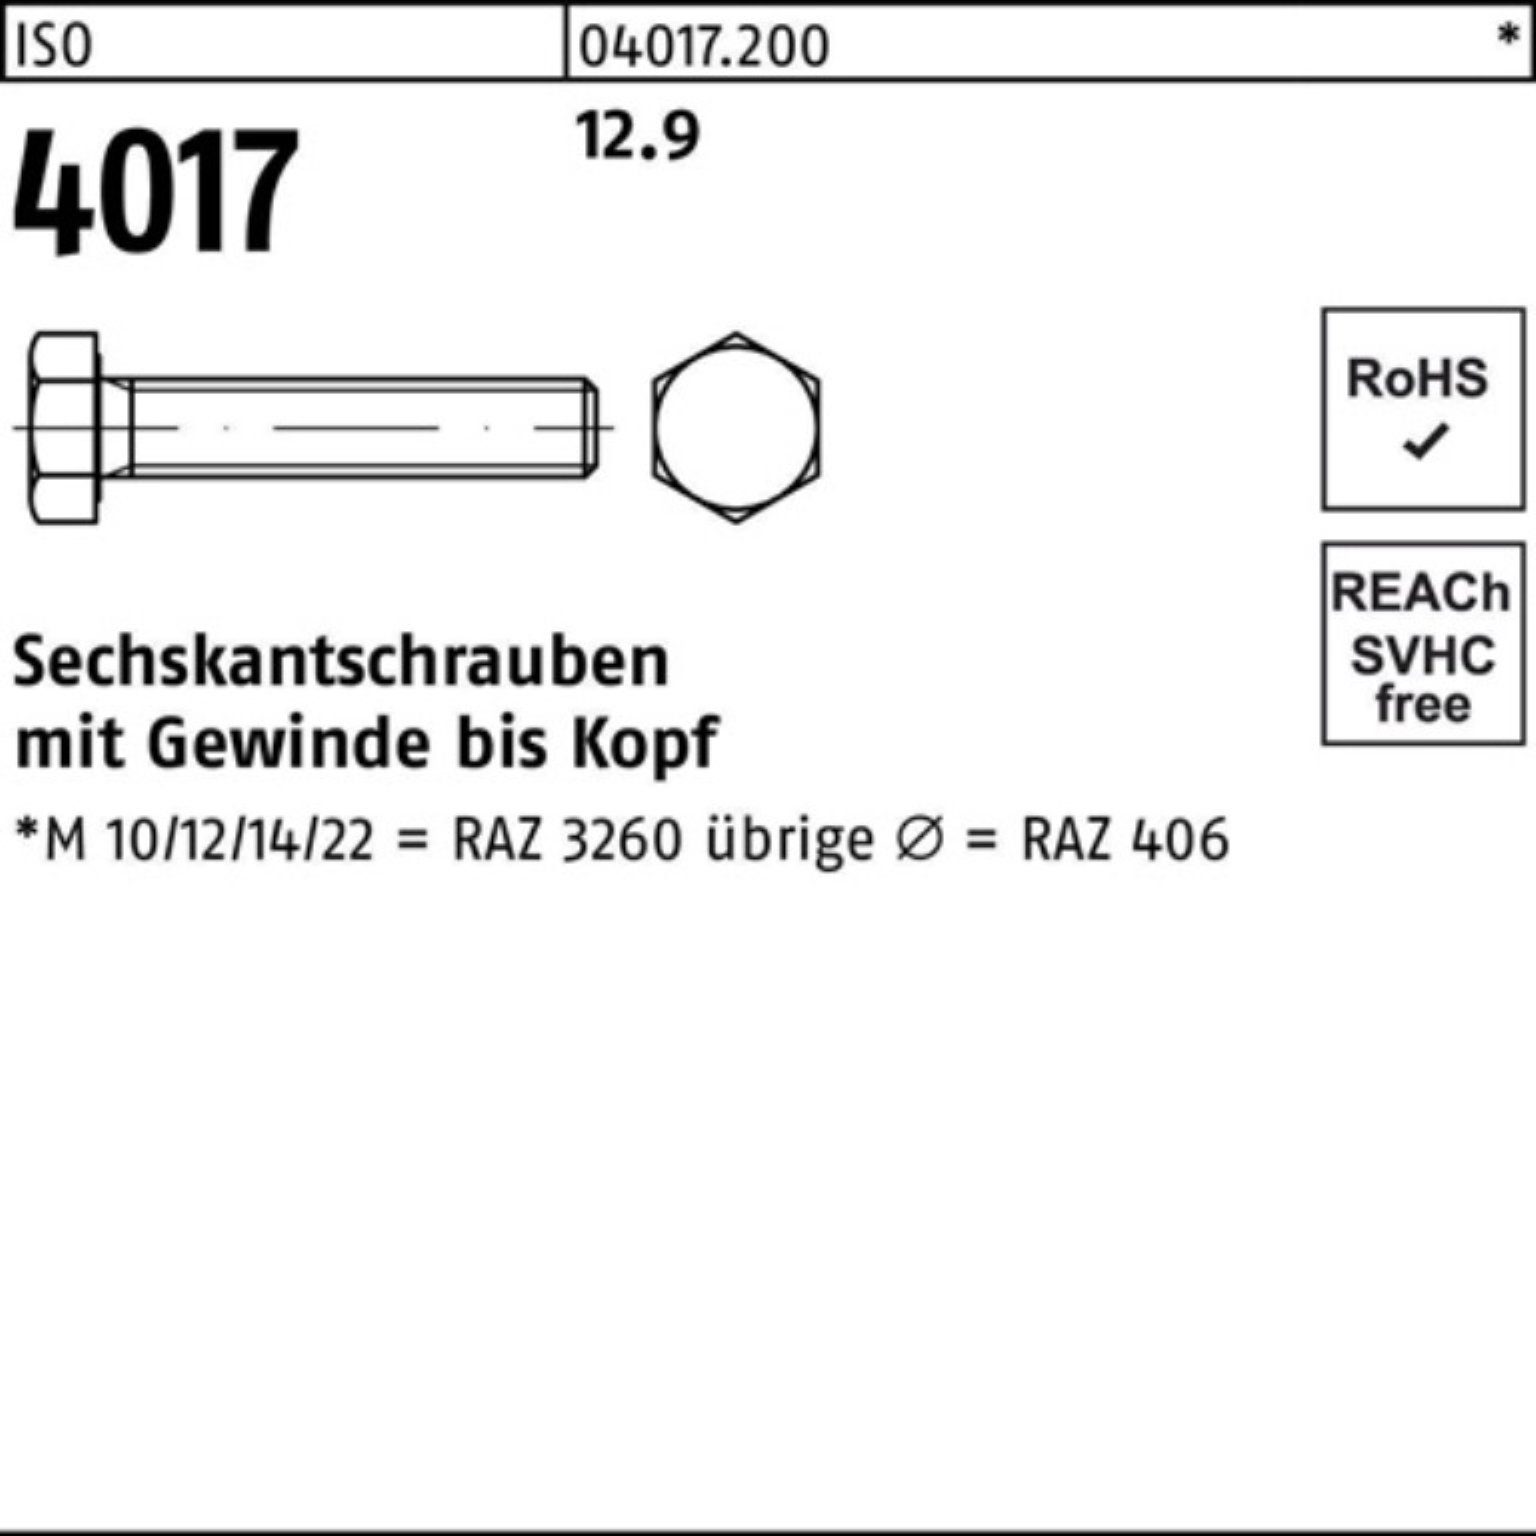 ISO Sechskantschraube Bufab Stück 4017 VG Pack ISO 500er M6x 40 12.9 Sechskantschraube 500 20